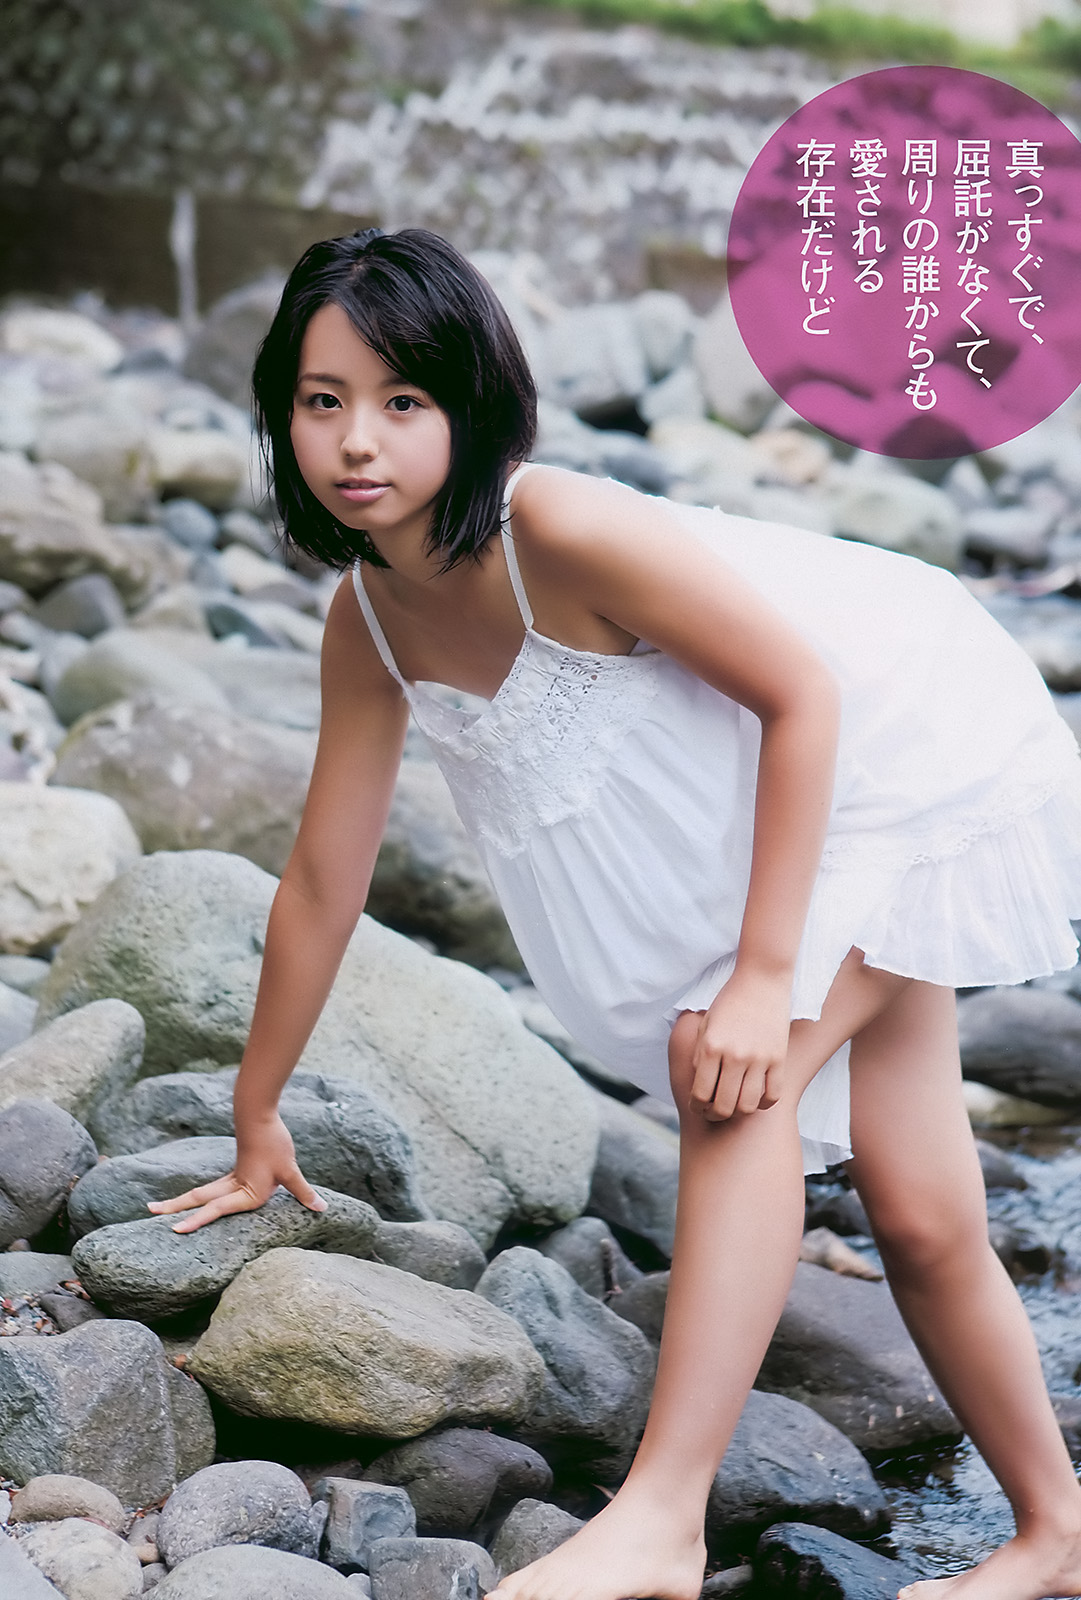 Rina Koike Japanese Gravure Girl Pt 1 Cute Japanese Girl And Hot Girl Asia